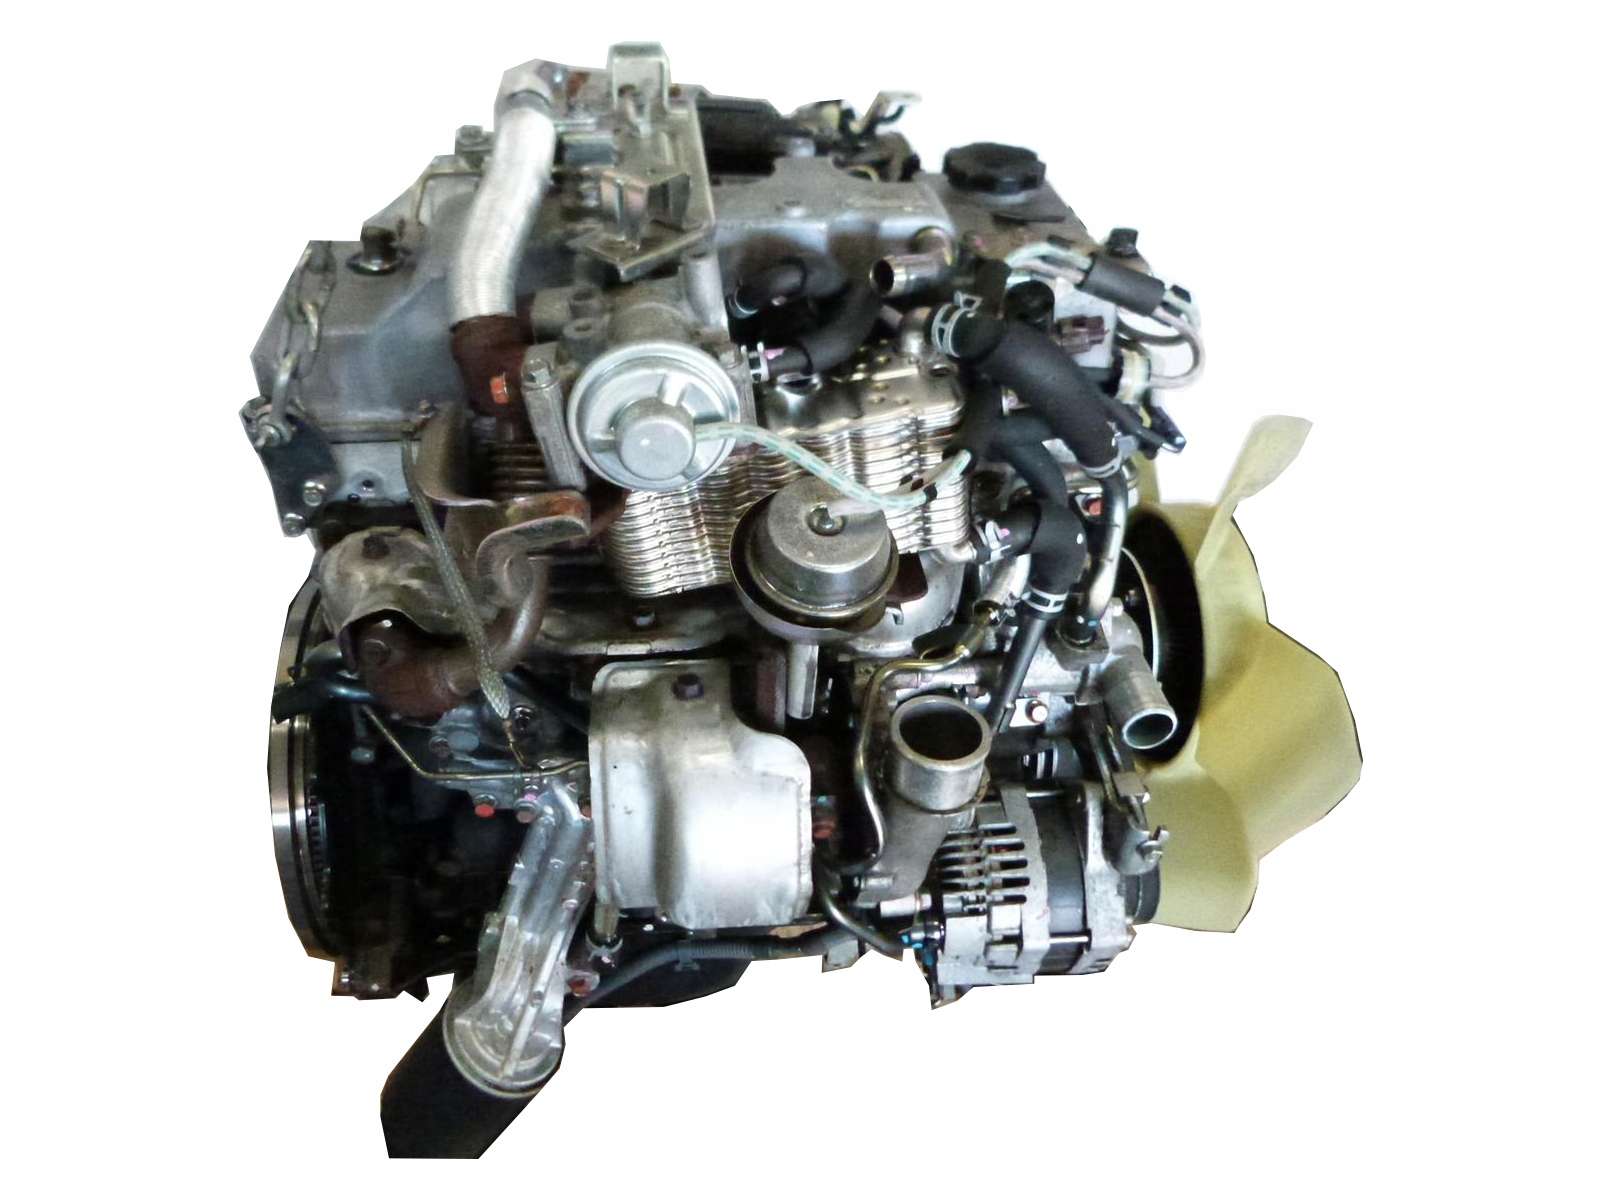 Масло в двигатель Mitsubishi 4M41: правильное использование и объем